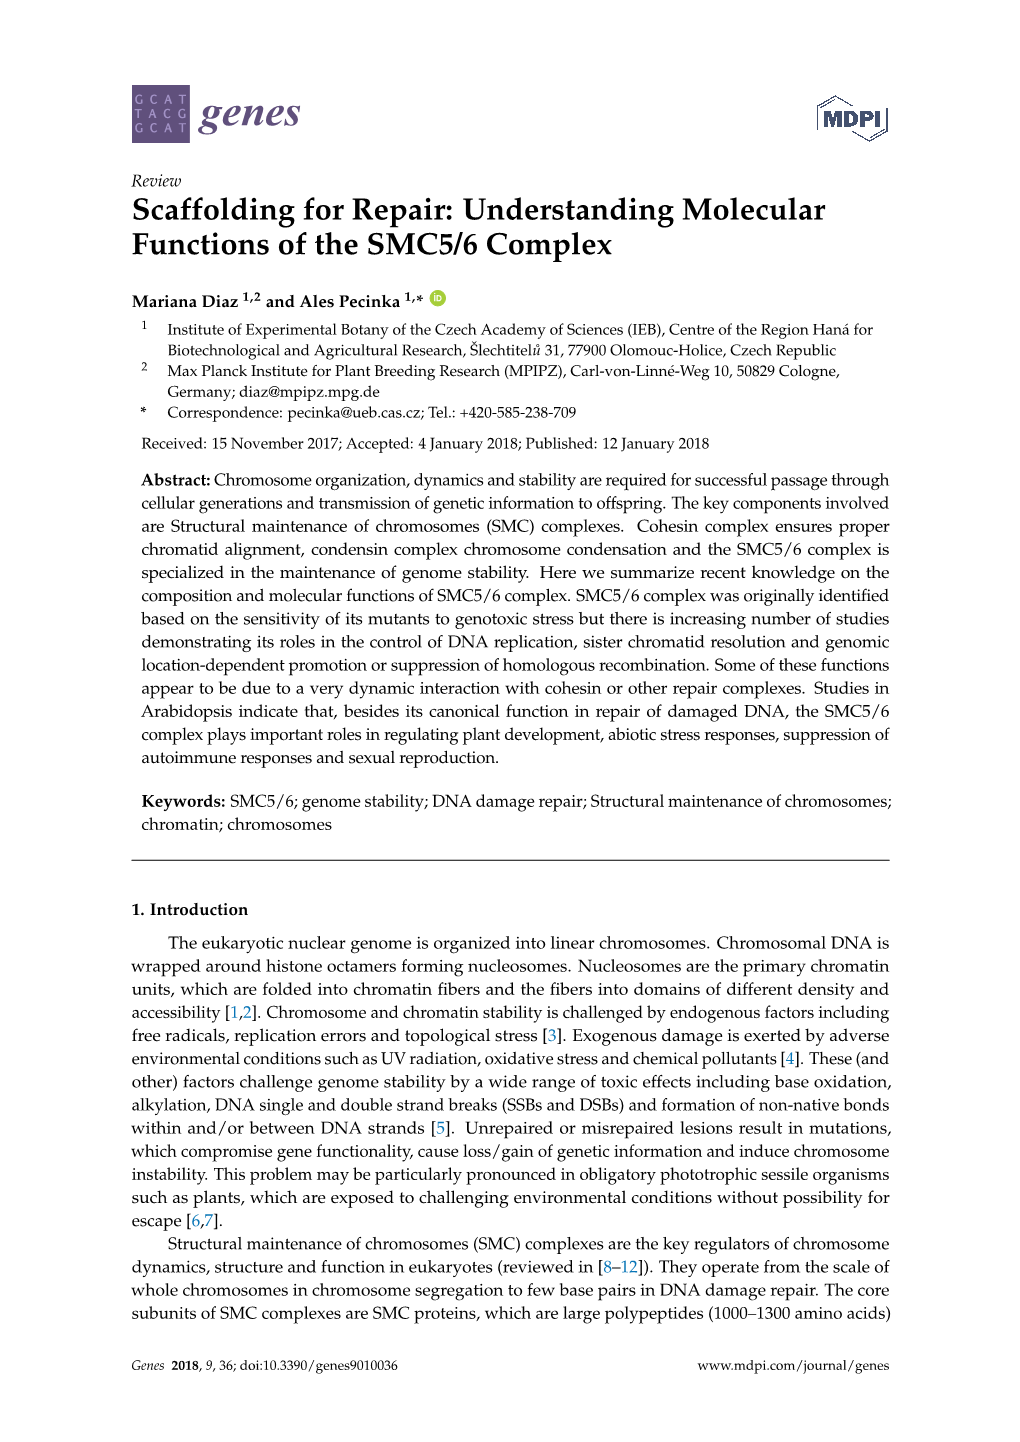 Understanding Molecular Functions of the SMC5/6 Complex